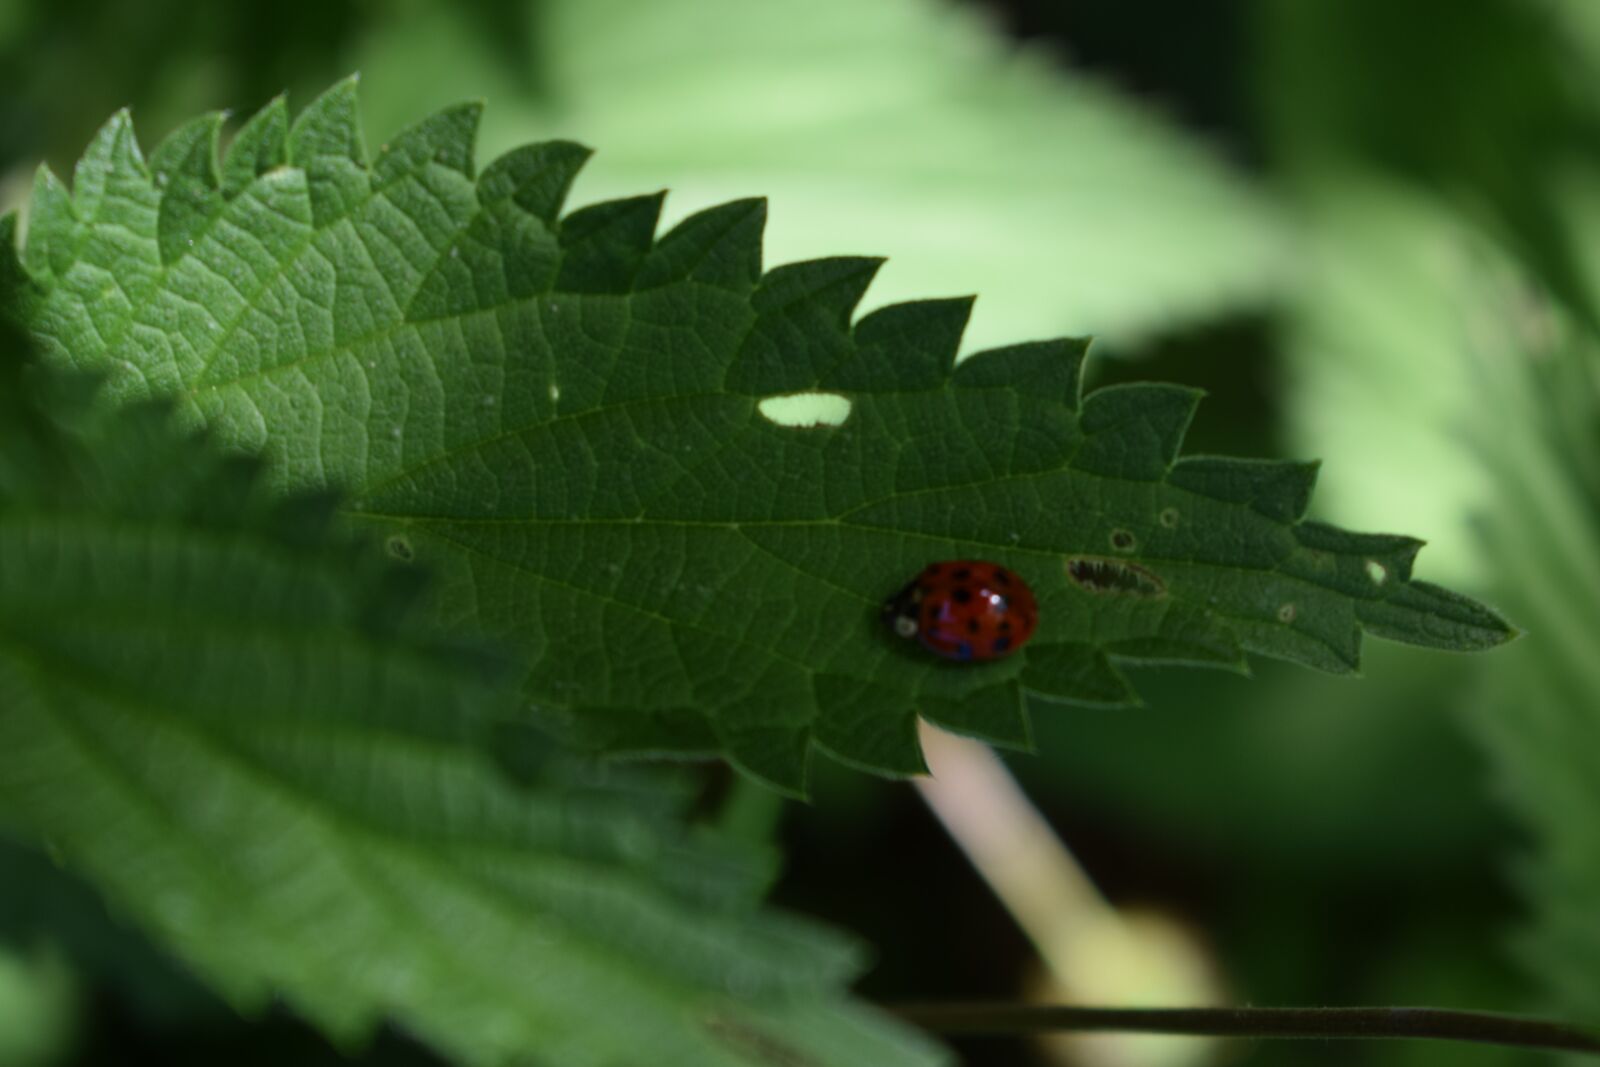 Nikon AF-P DX Nikkor 18-55mm F3.5-5.6G VR sample photo. Forest, ladybird, ladybug, leaf photography